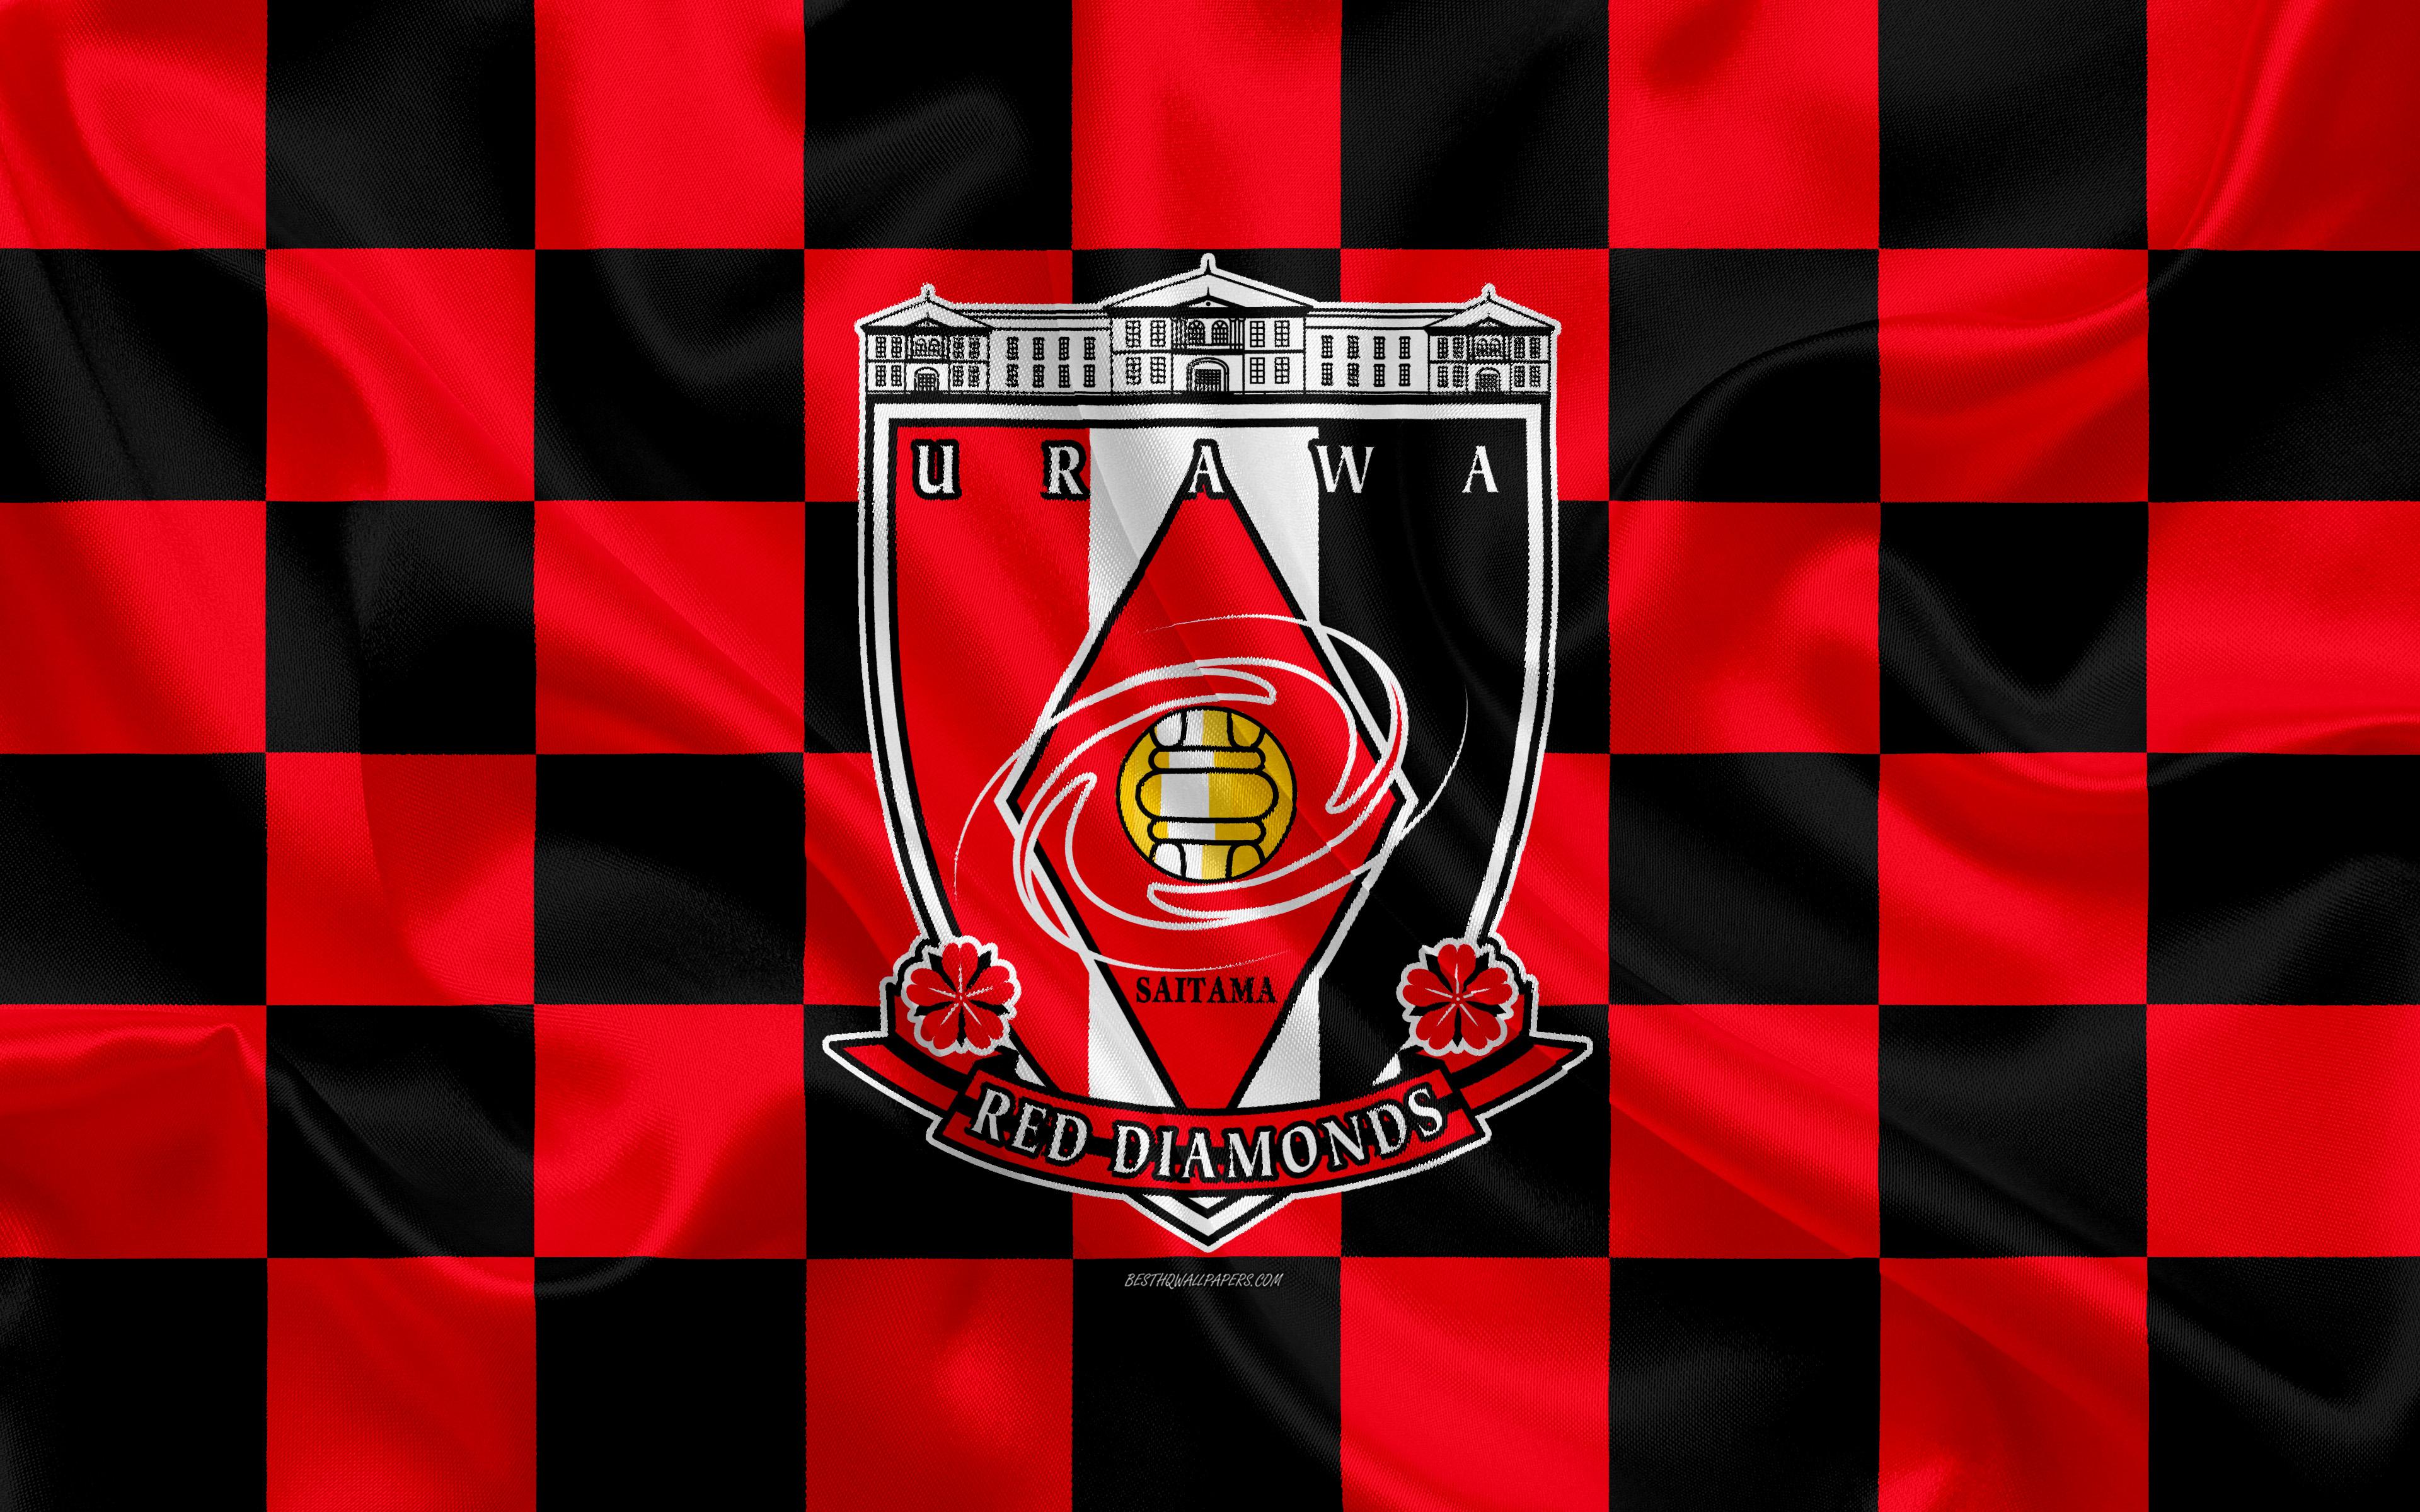 باشگاه فوتبال اوراوا رد دیاموندز (Urawa Red Diamonds)